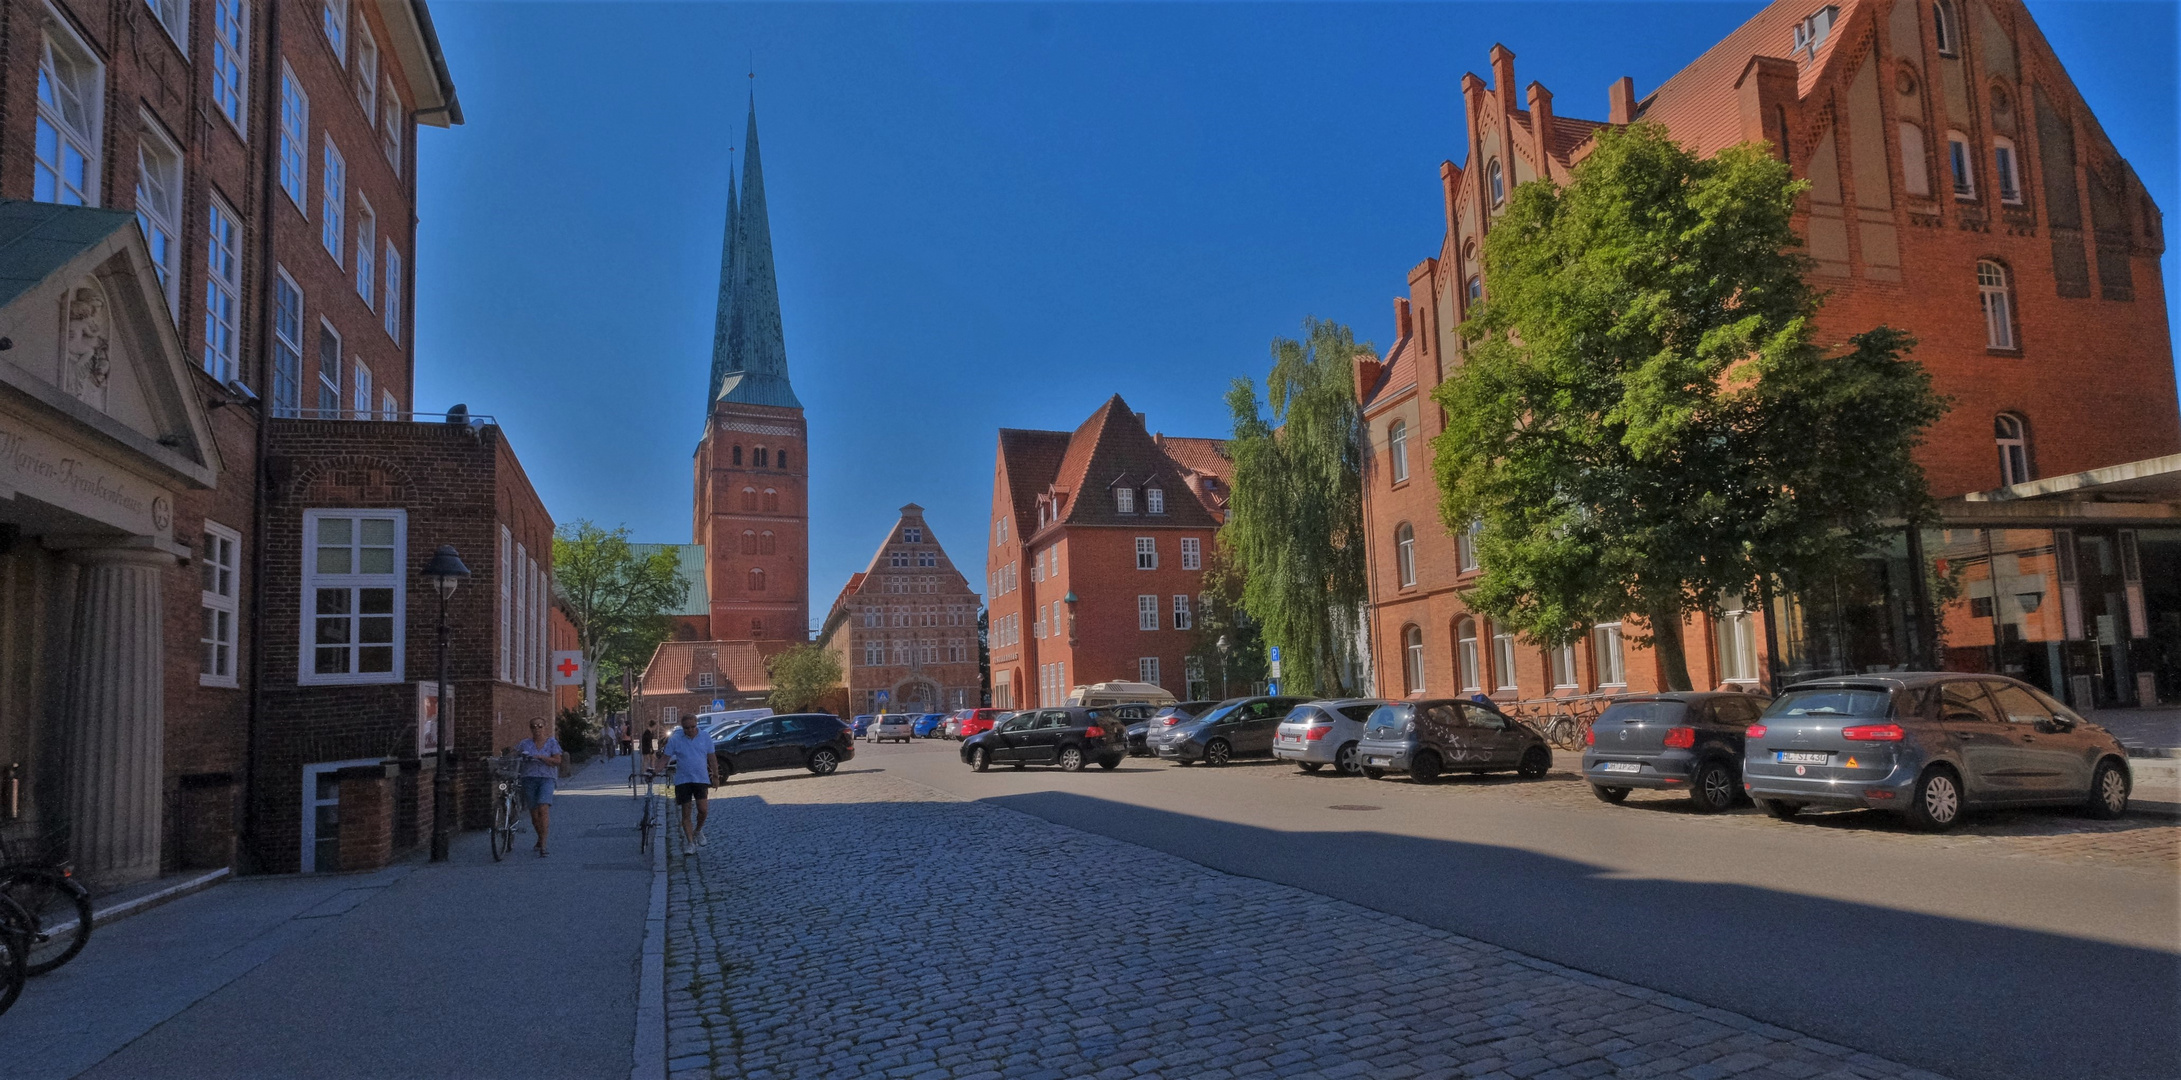 Lübeck, mit Blick auf den Dom (Lübeck, con vistas a la catedral)